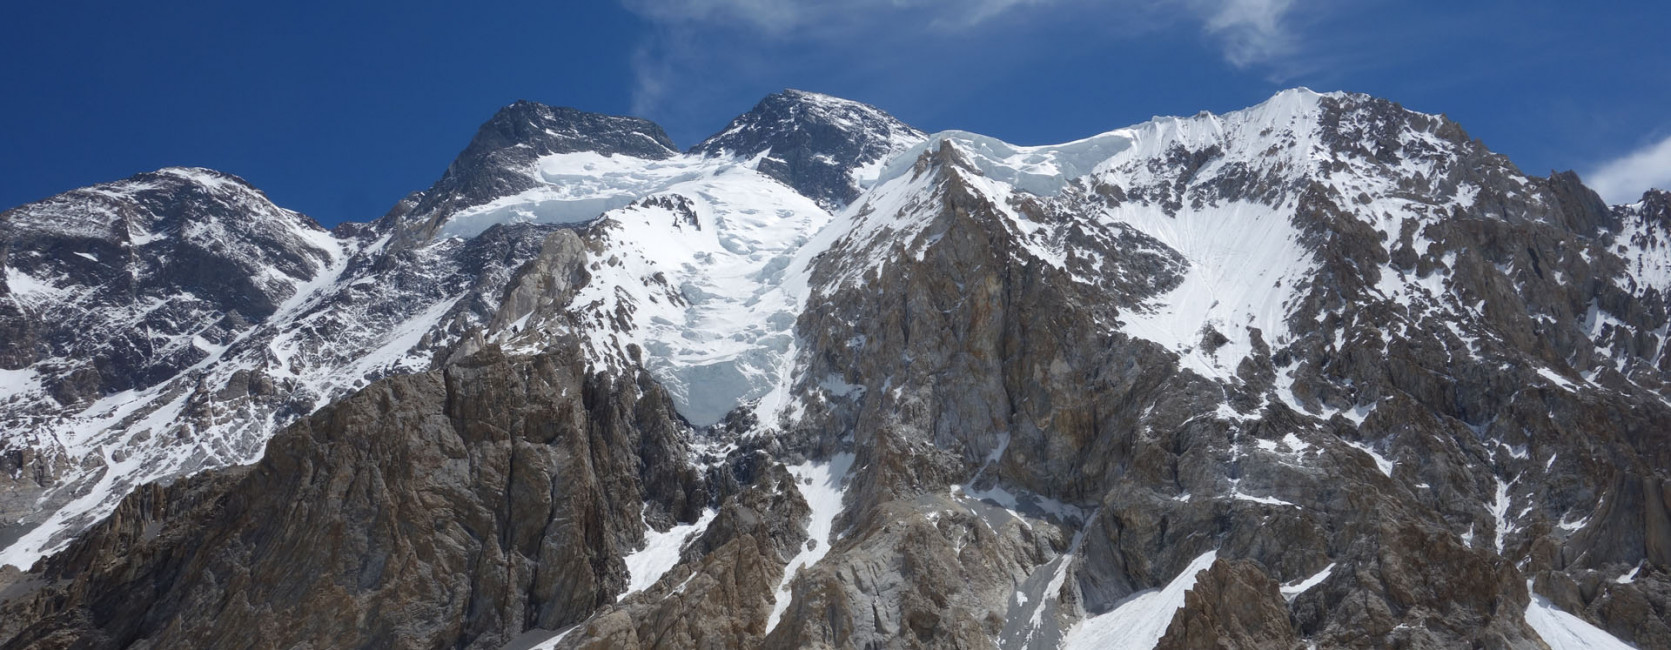 Andreas Frydensbjerg bestiger Broad Peak